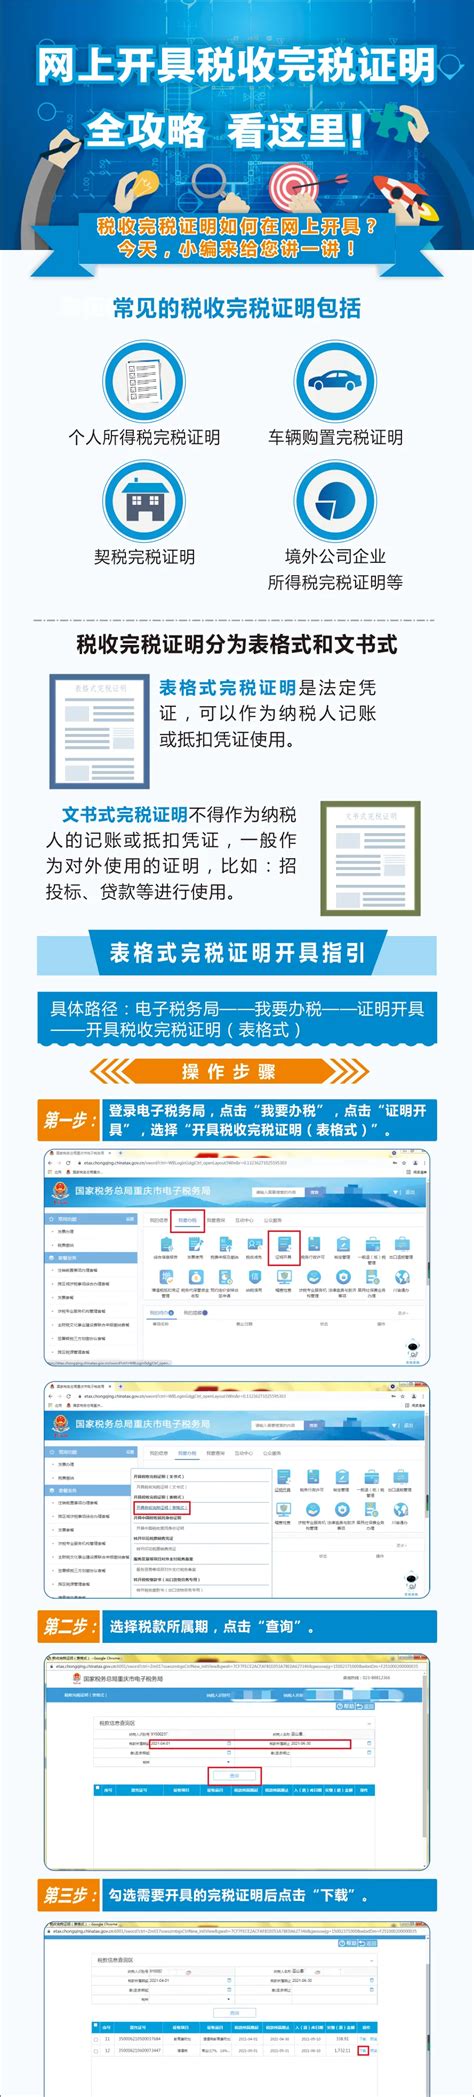 湖北省电子税务局契税纳税申报操作流程说明